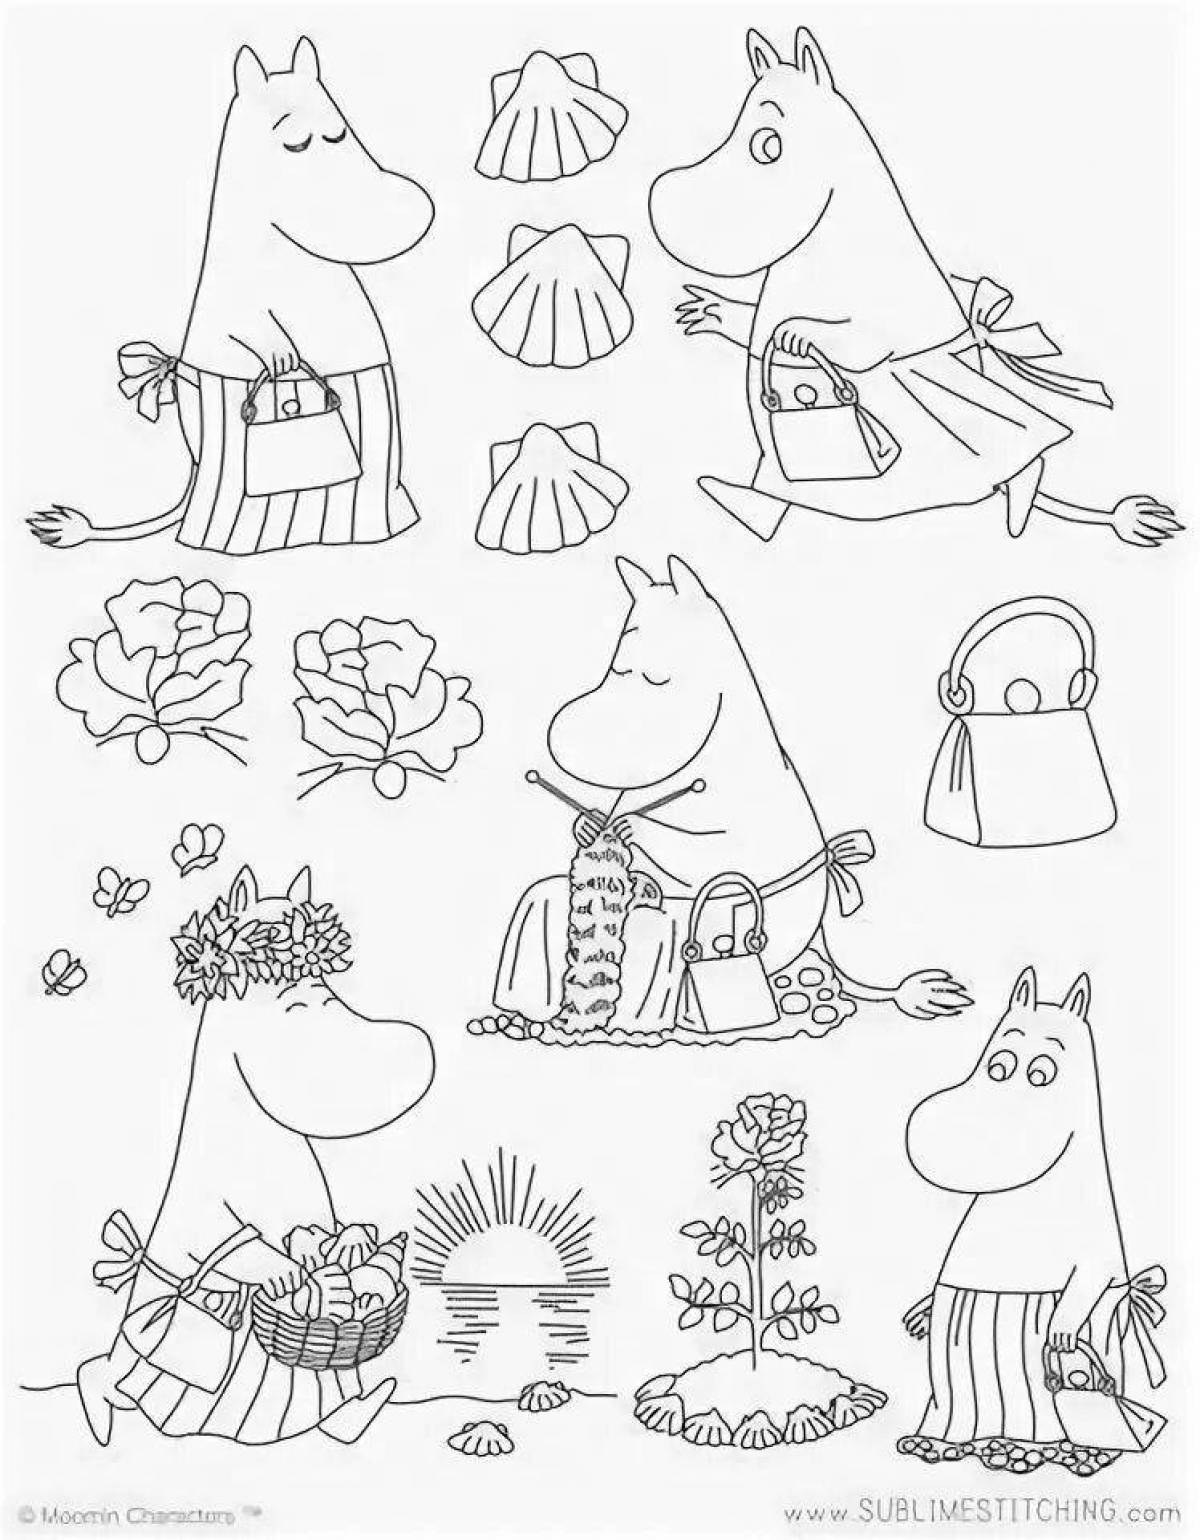 Moomin coloring book